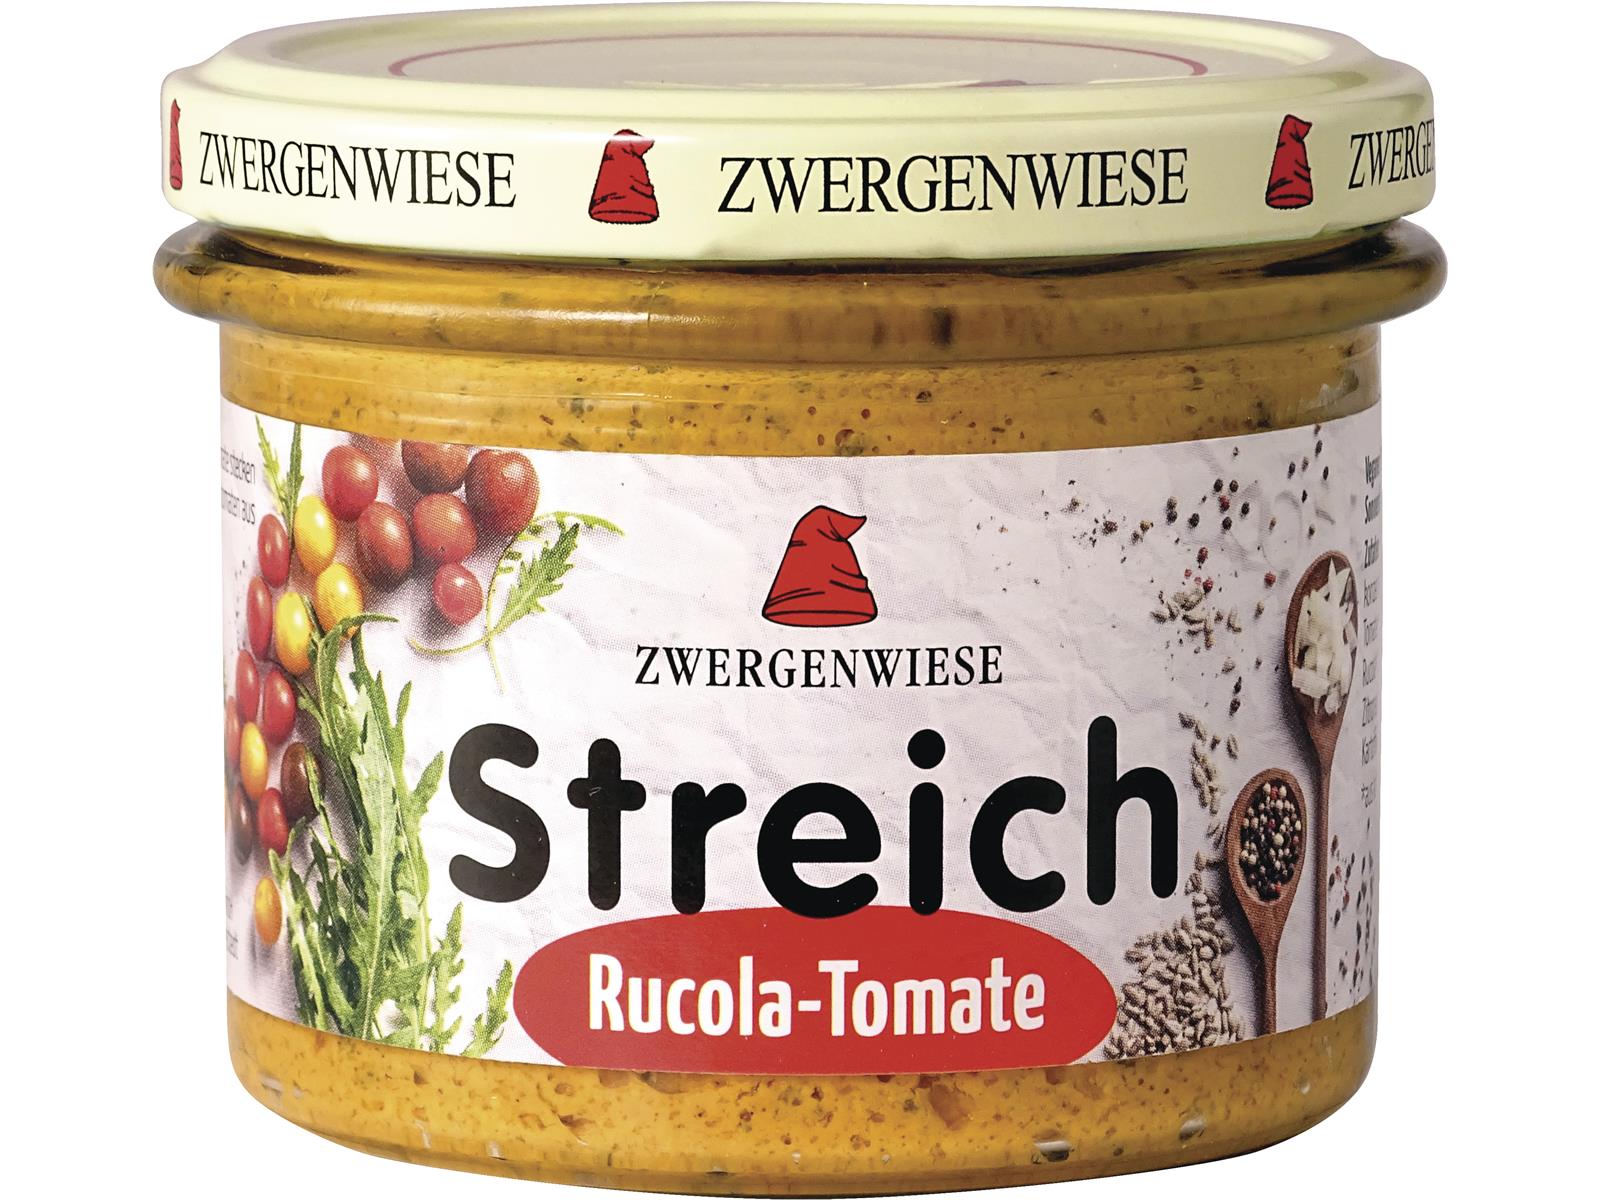 Zwergenwiese Rucola-Tomate Streich 180g